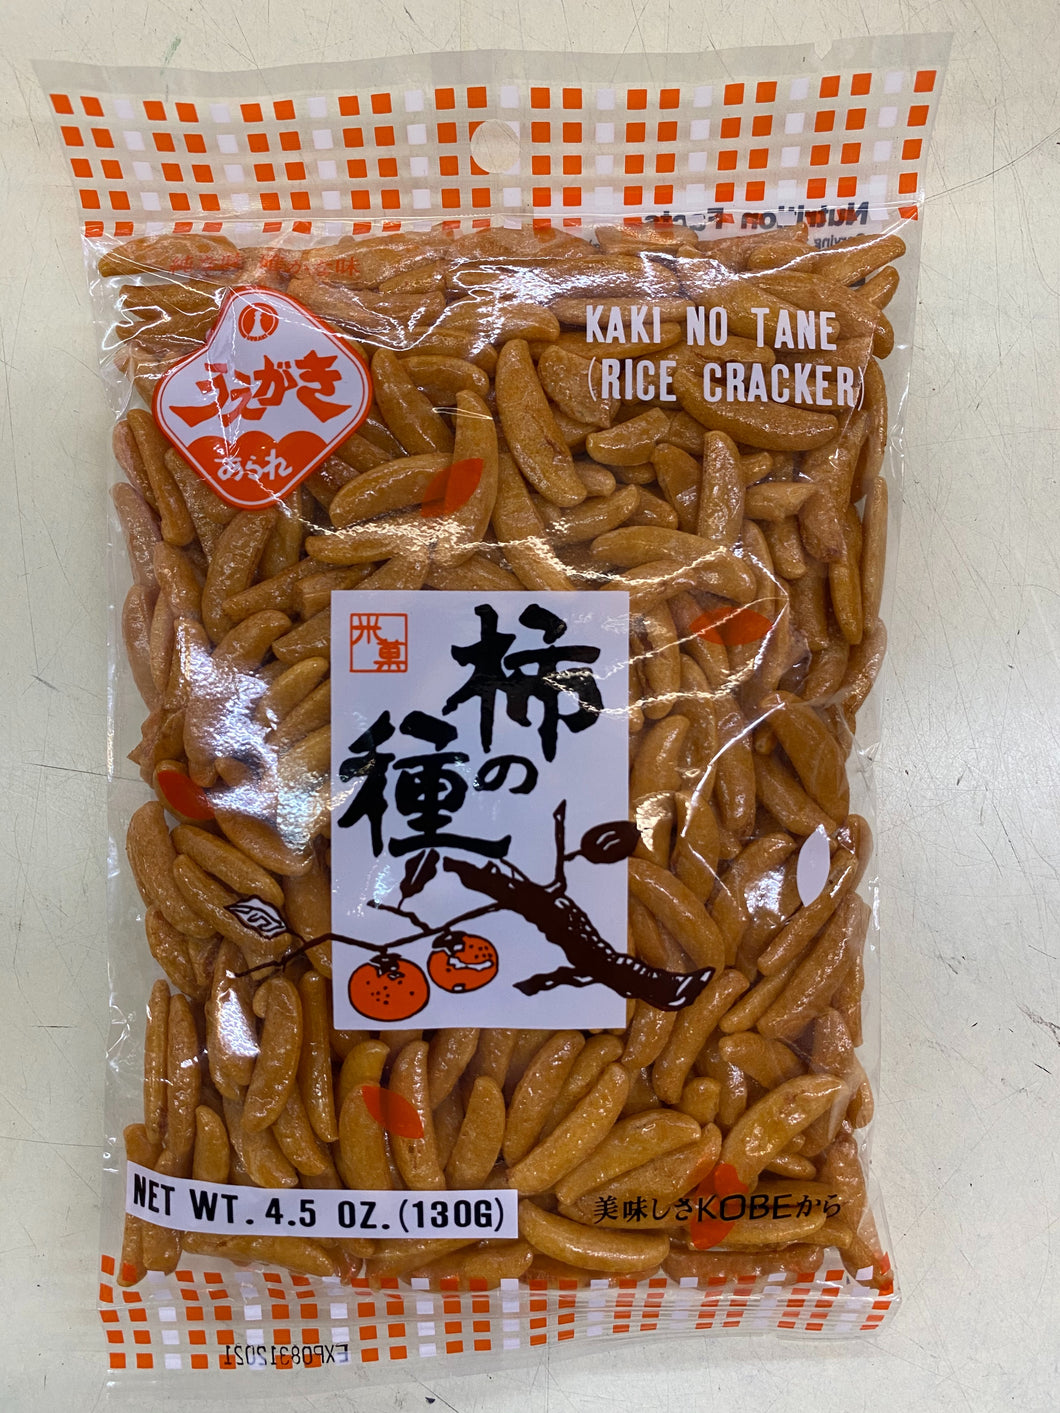 Uegaki Baked Rice Crackers